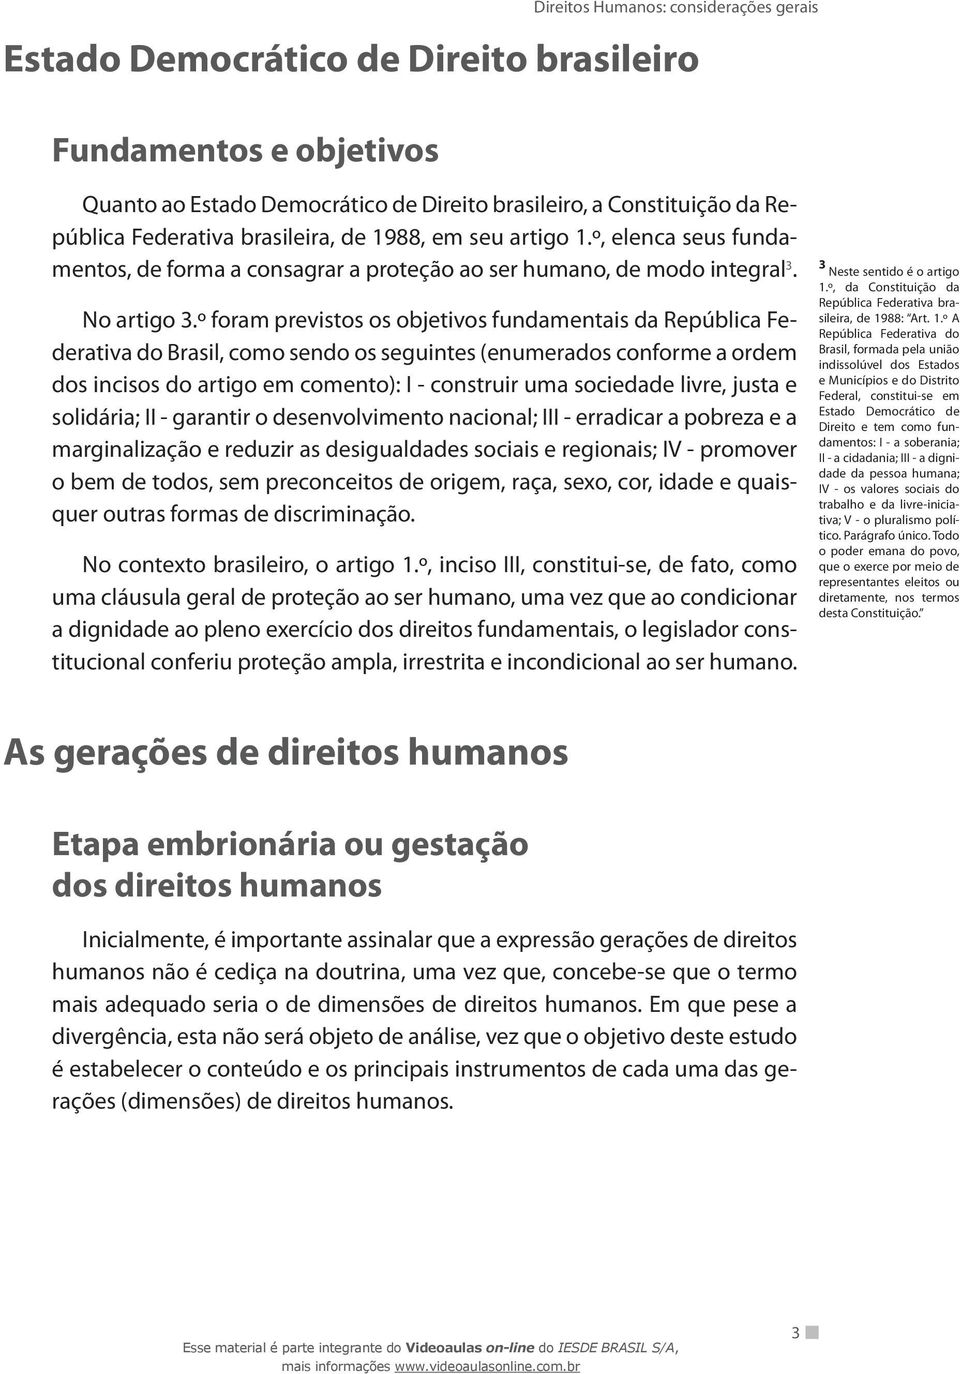 º foram previstos os objetivos fundamentais da República Federativa do Brasil, como sendo os seguintes (enumerados conforme a ordem dos incisos do artigo em comento): I - construir uma sociedade